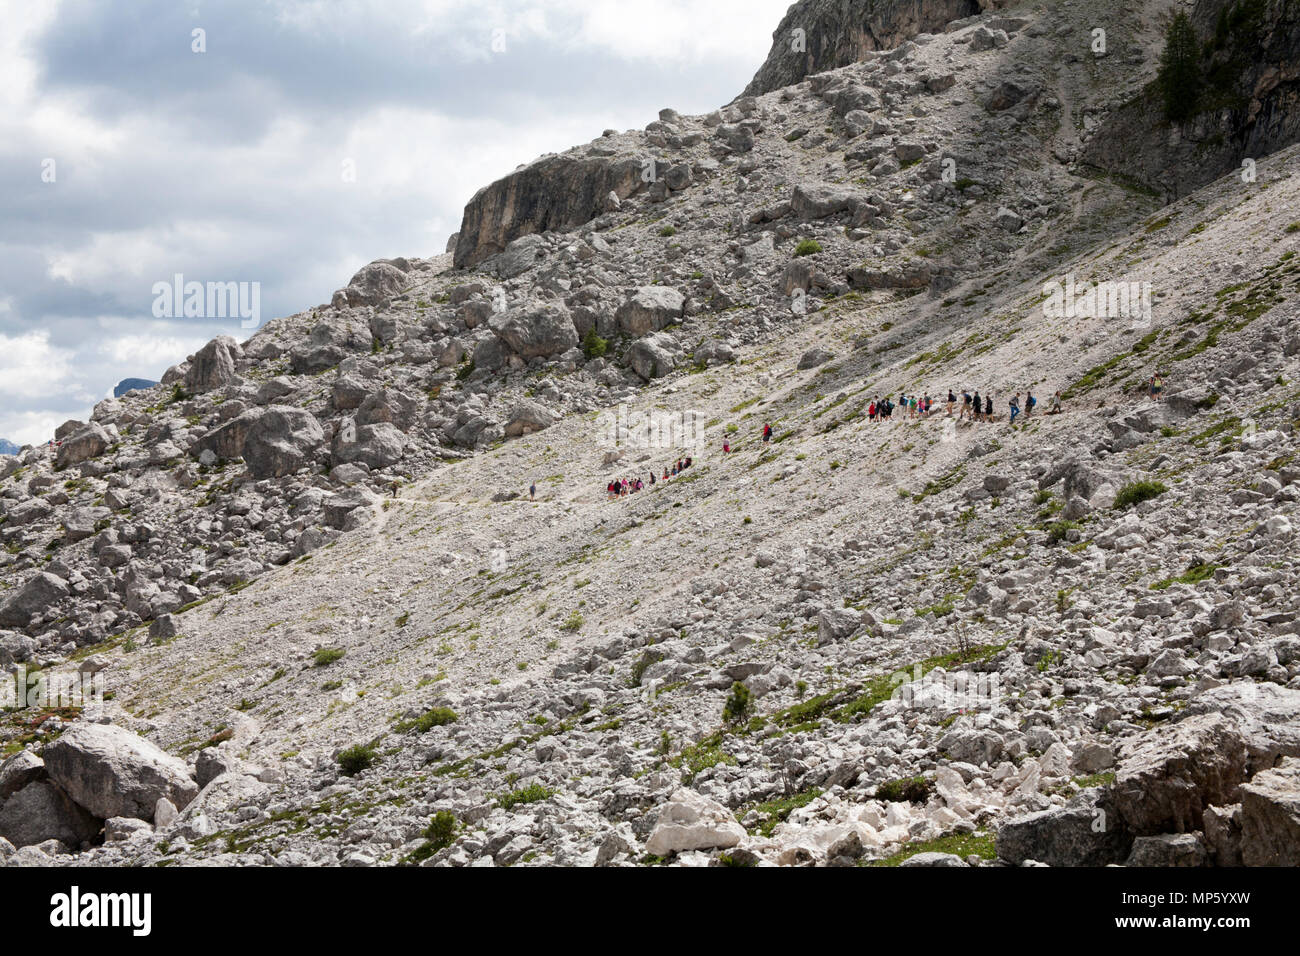 Un gruppo di trekking che attraversa un percorso roccioso il sentiero 526A sotto le scogliere del Sassolungo al Piz Sella al di sopra di Selva di Val Gardena Dolomiti Italia Foto Stock